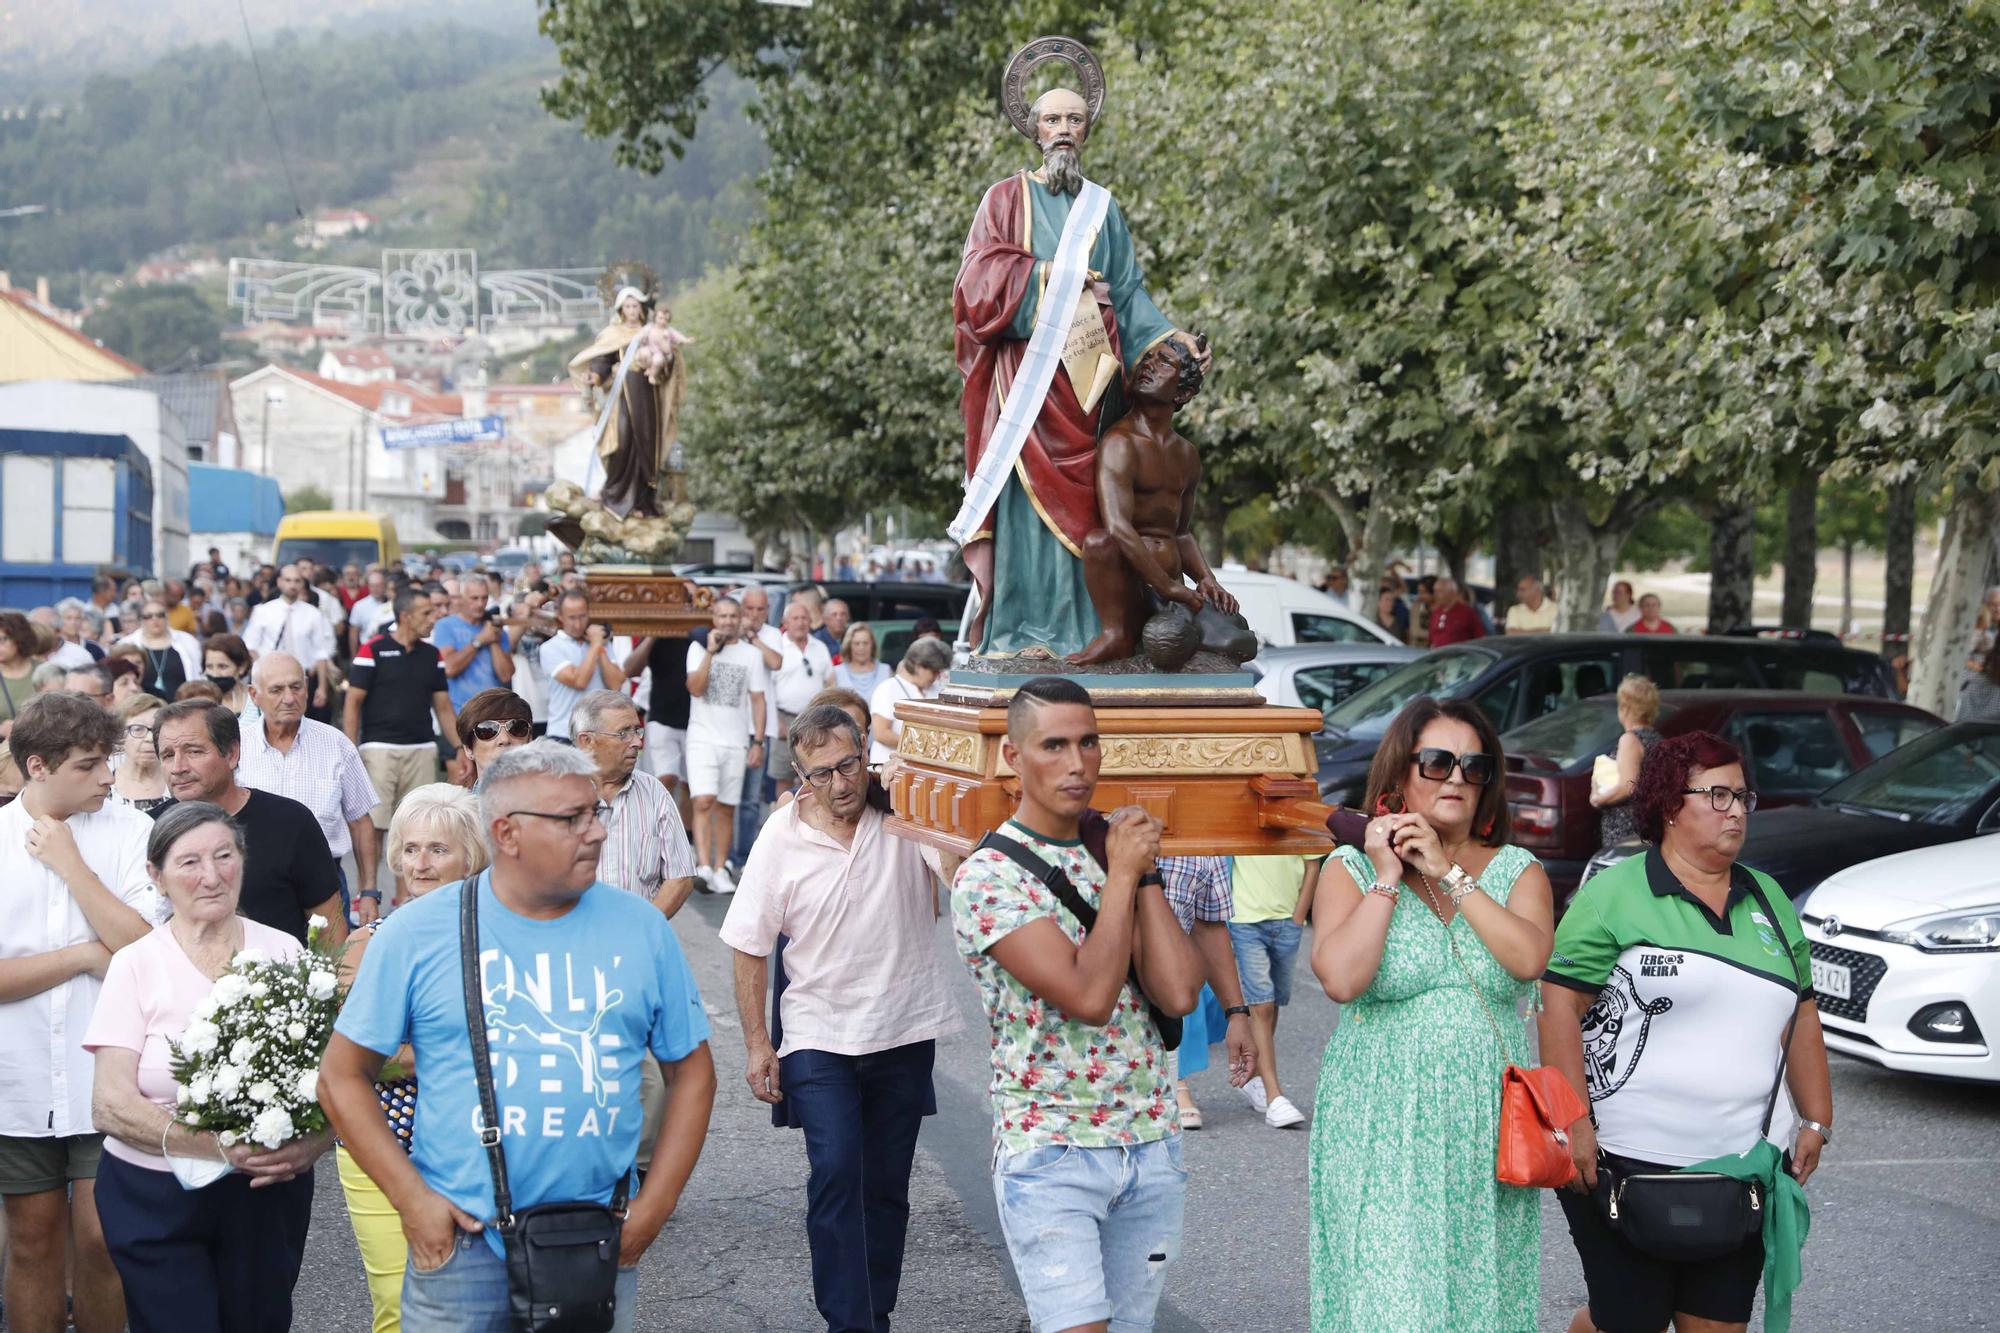 Fiestas en Moaña: Los "tercos y festeiros" de Meira celebran Sametolaméu con un pregonero de lujo